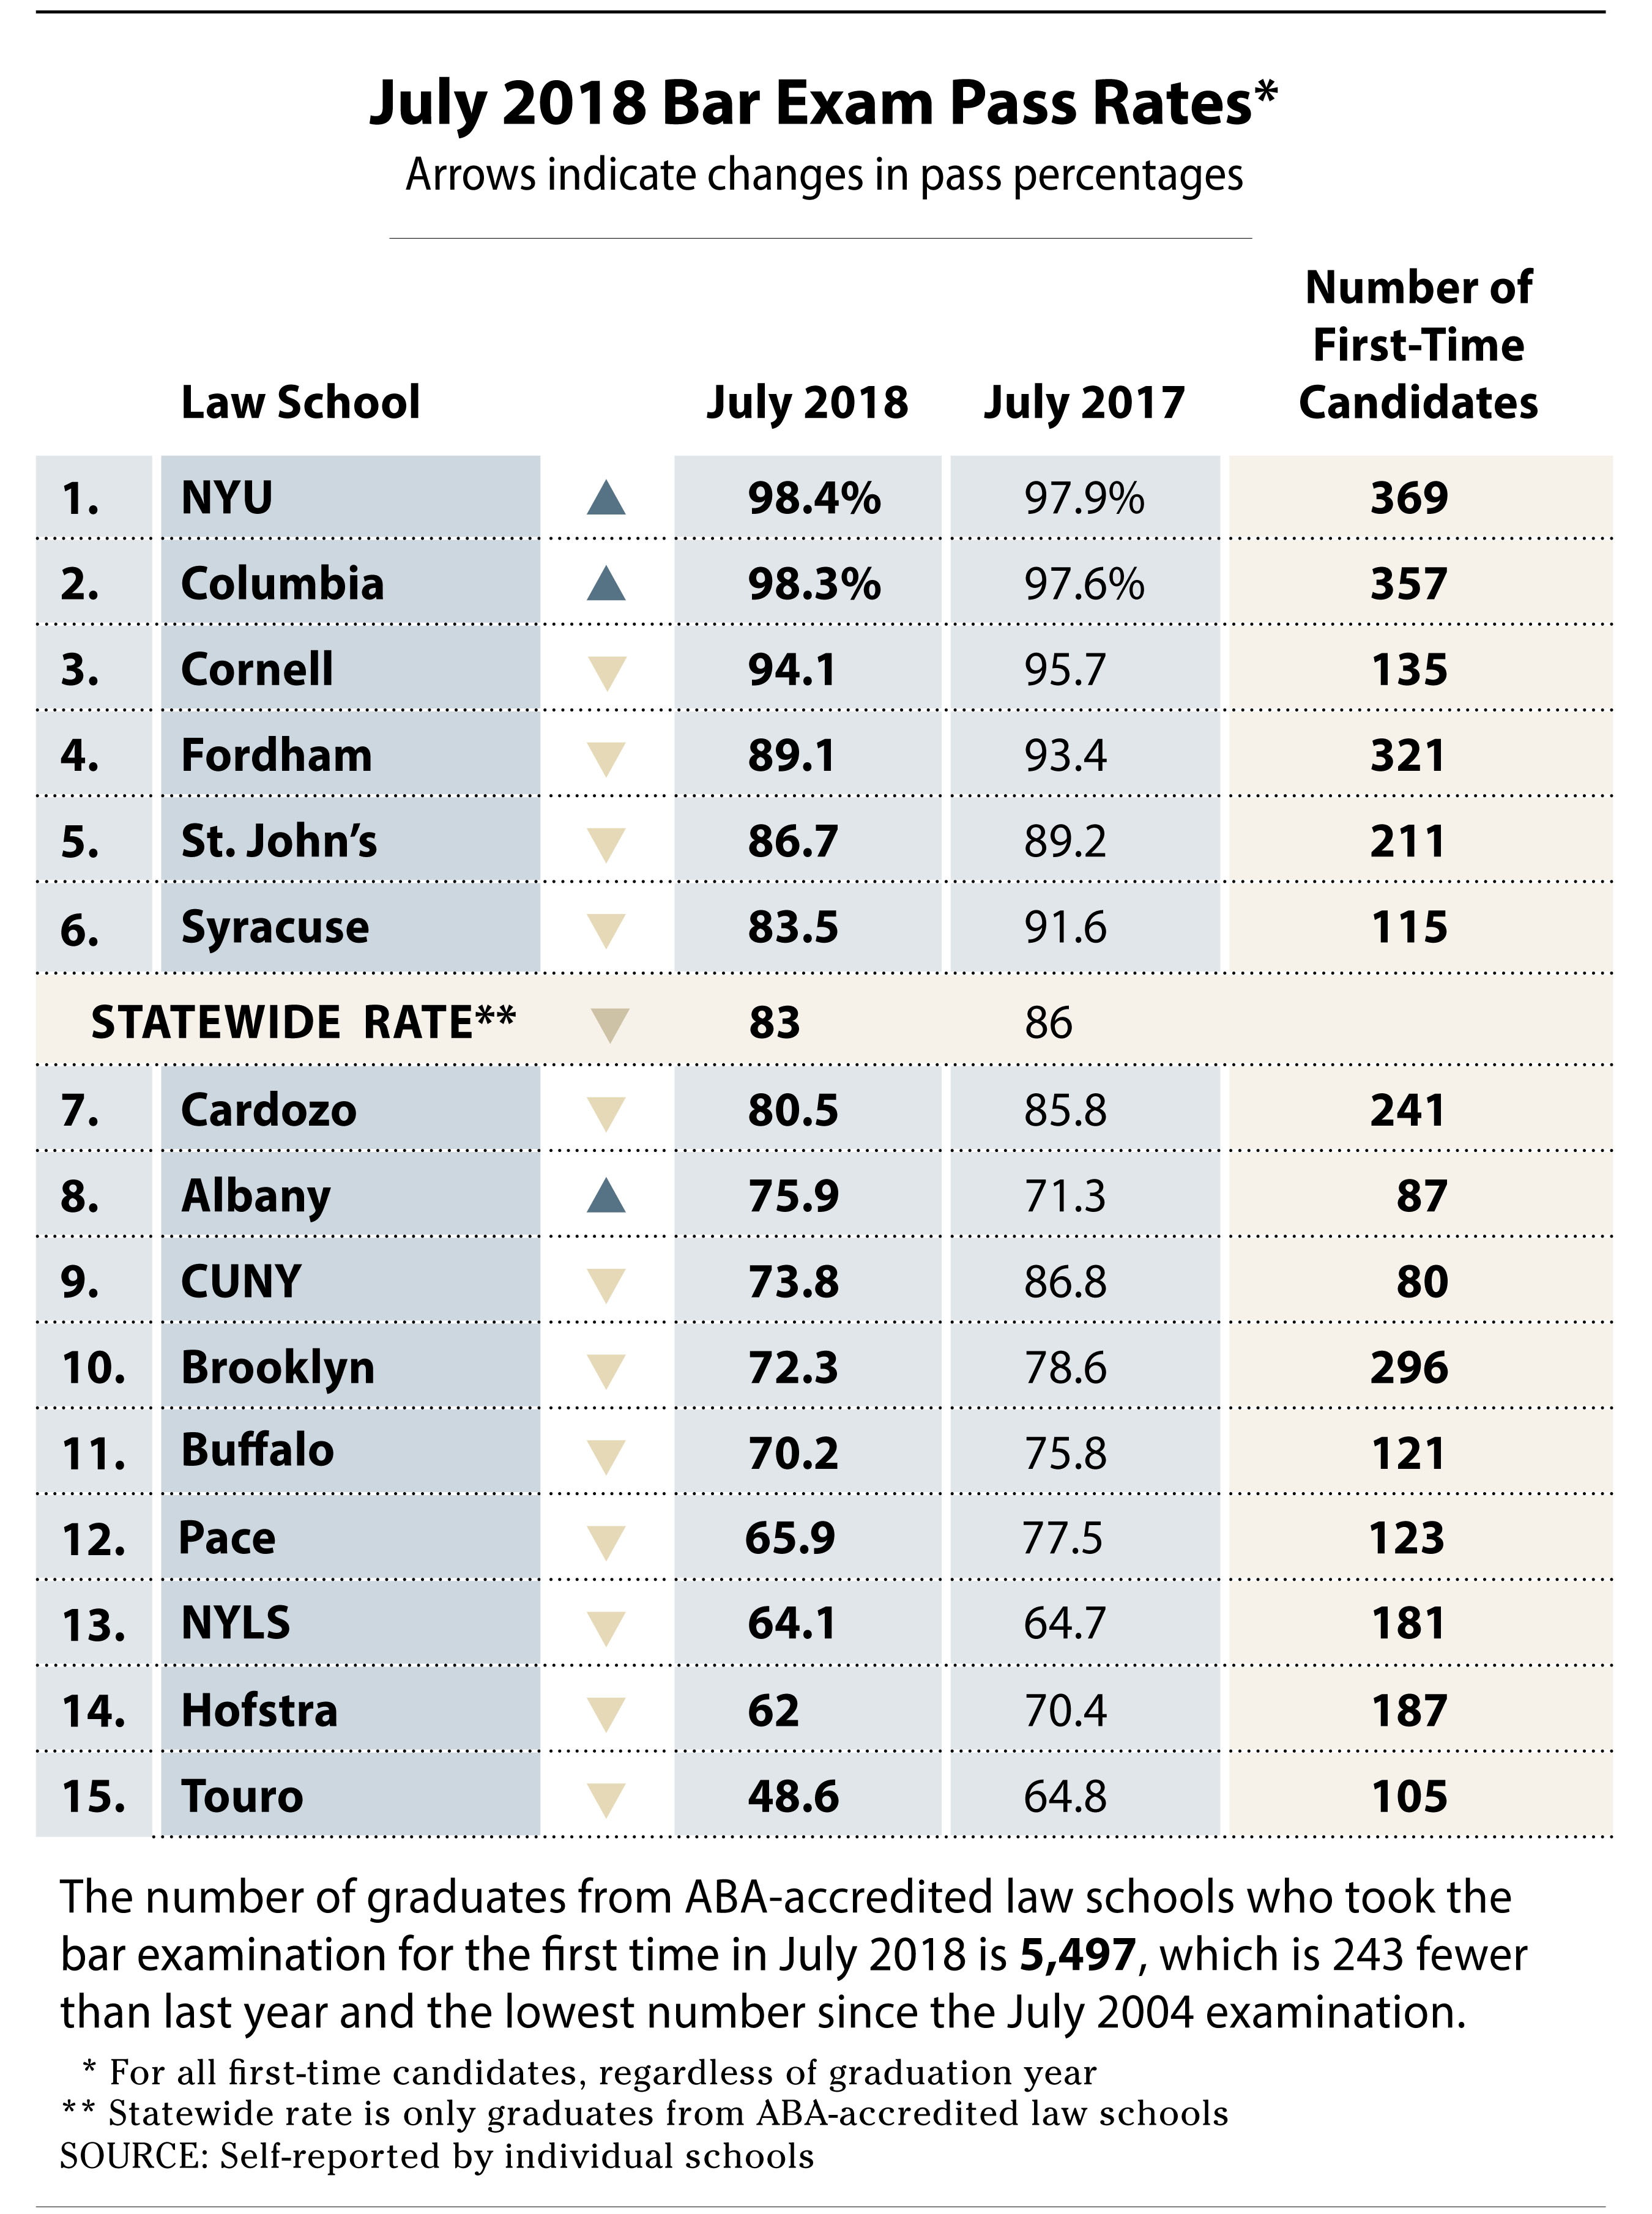 Bar Exam Pass Rates Dive at 5 NY Schools While Top Programs Increase